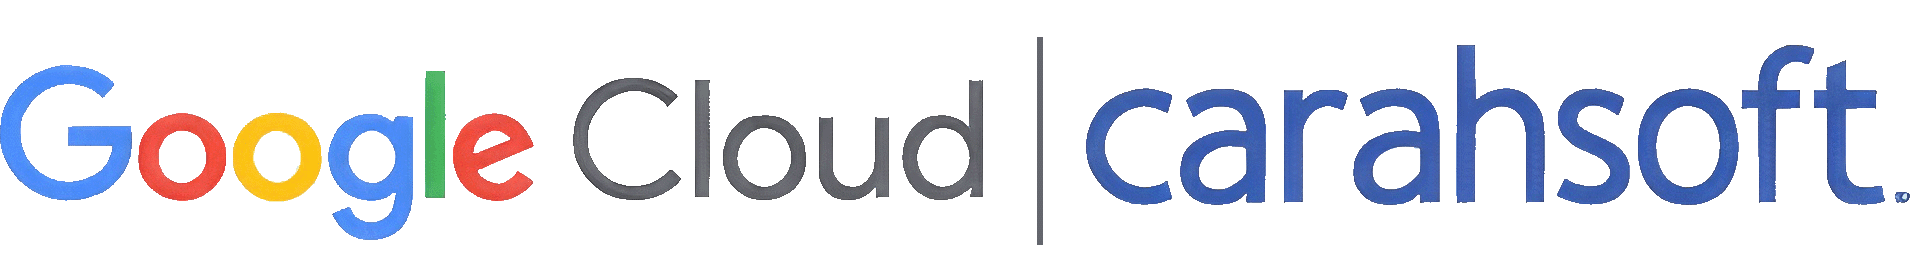 Google Cloud and Carasoft logos